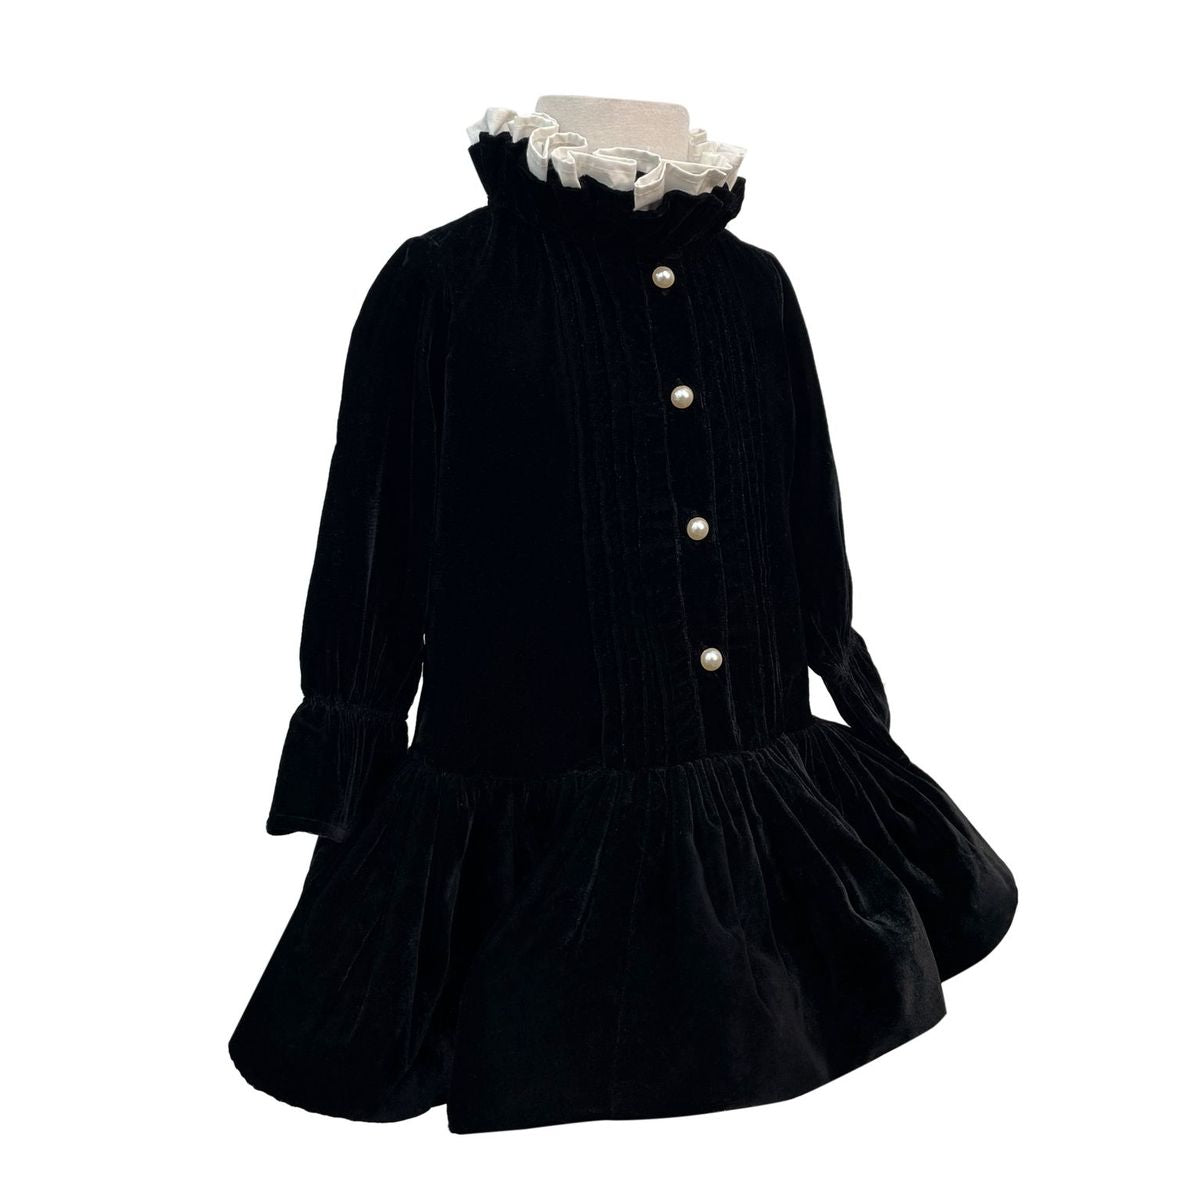 The Velvet Taylor Dress (Black)